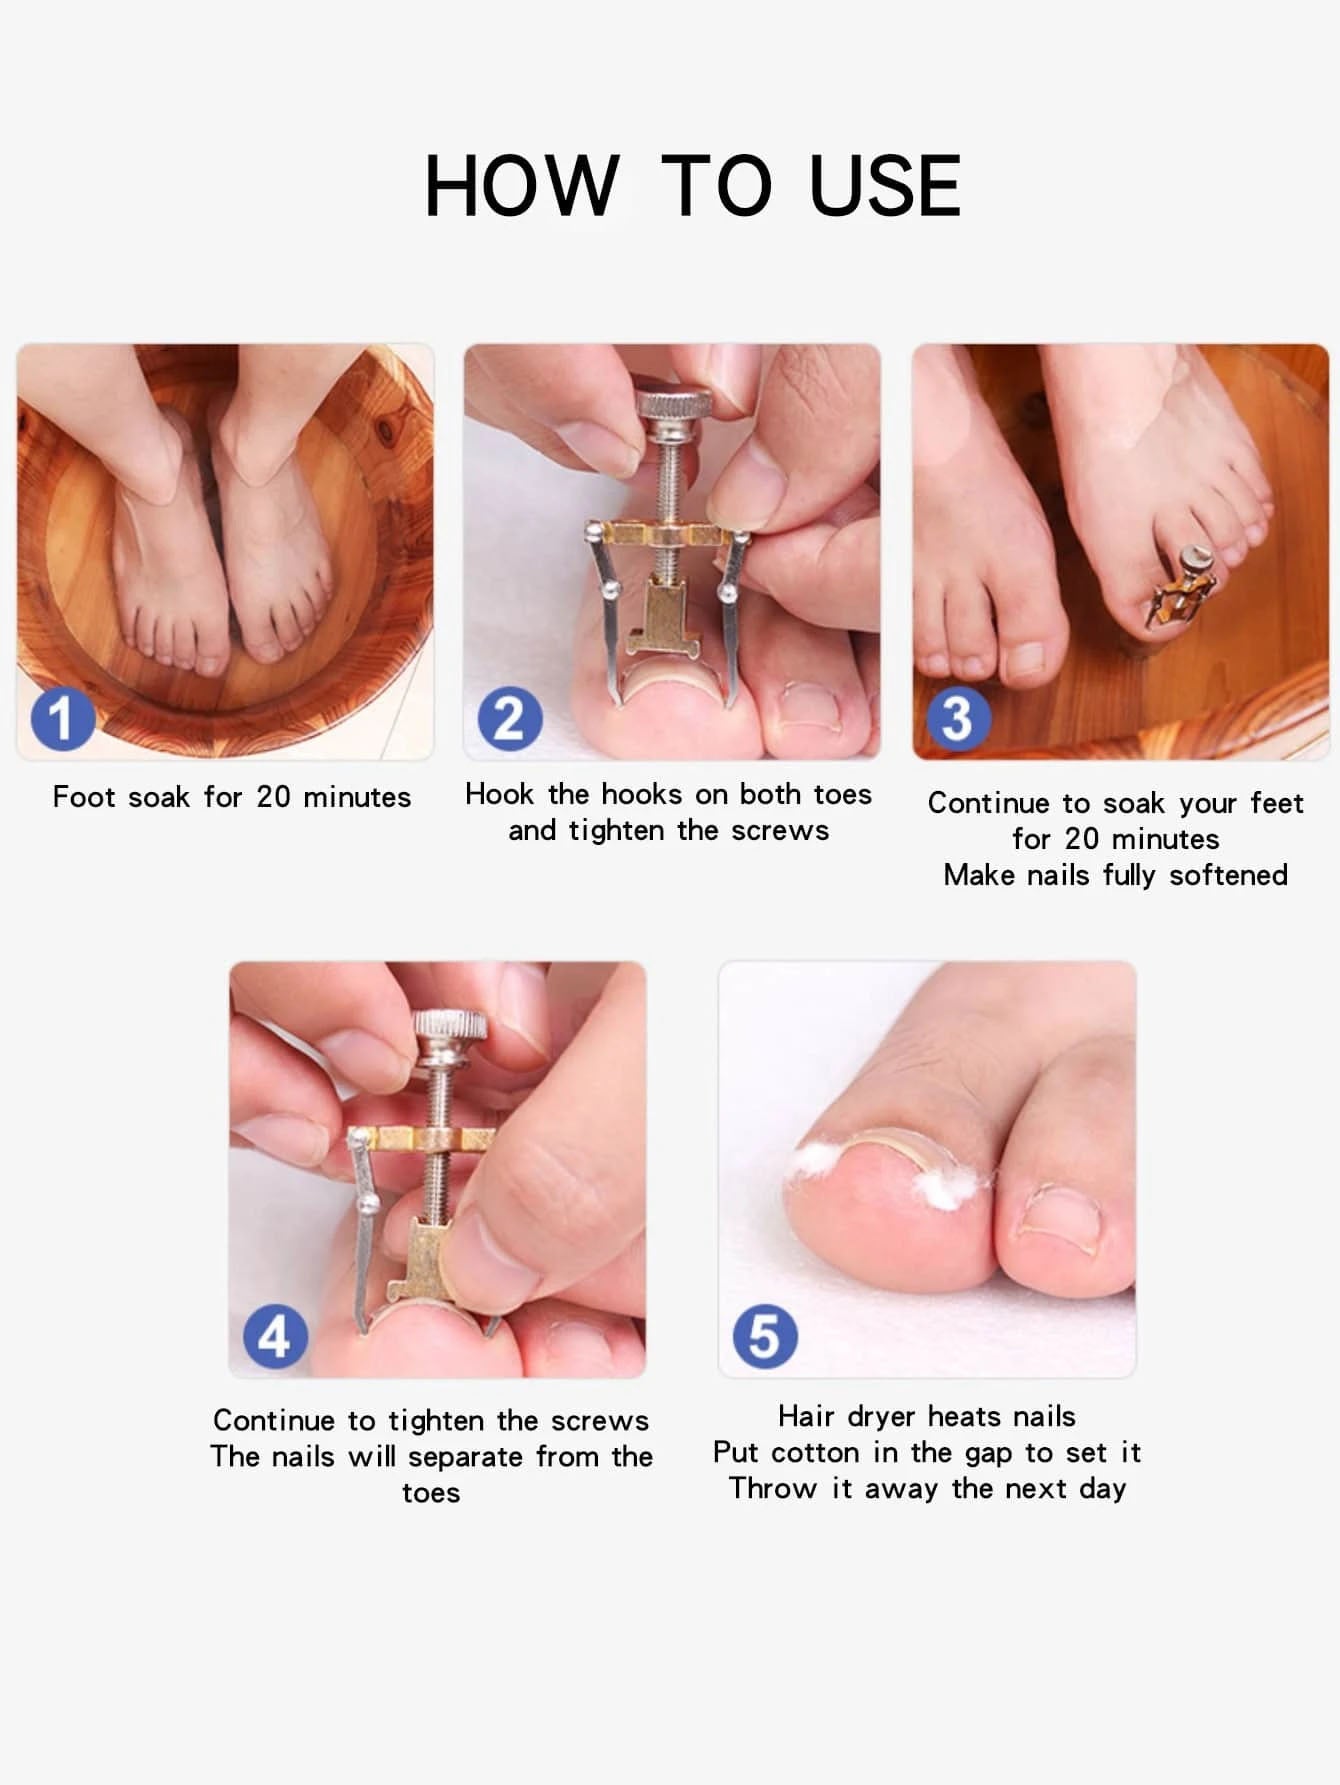 مصحح الأظافر النامية من الجلد،  مجموعة أدوات معالجة أصابع اليدين والقدمين (مصحح الأظافر النامية)